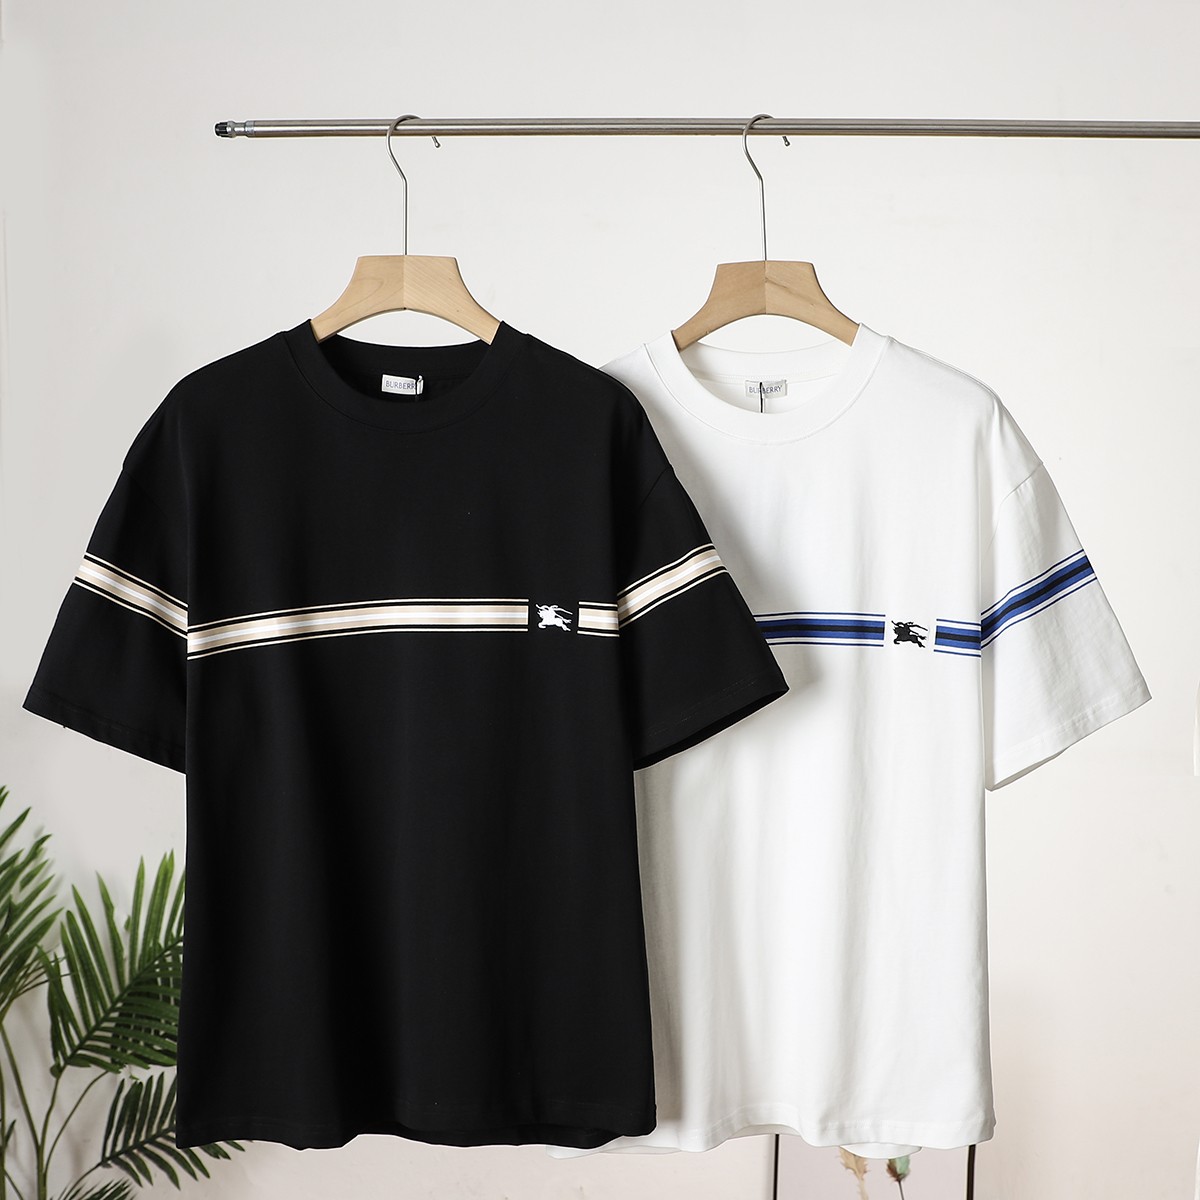 So kaufen Sie Replik Shop
 Burberry Kleidung T-Shirt Schwarz Weiß Stickerei Unisex Baumwolle Kurzarm